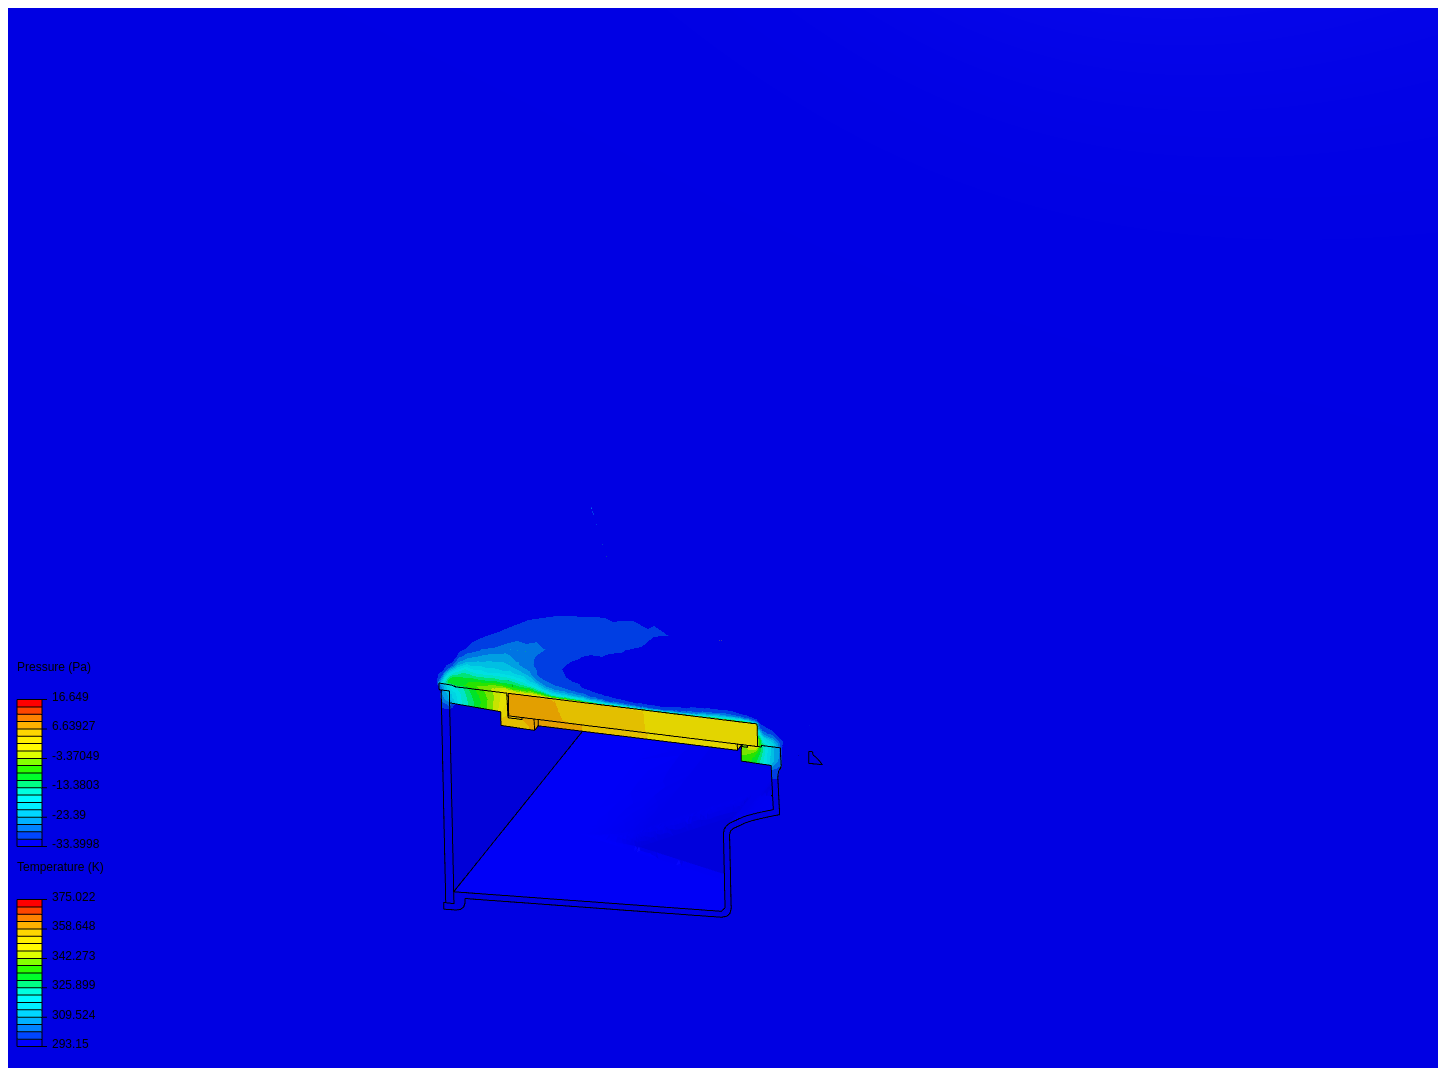 Carbon G1 Simulation V2 image